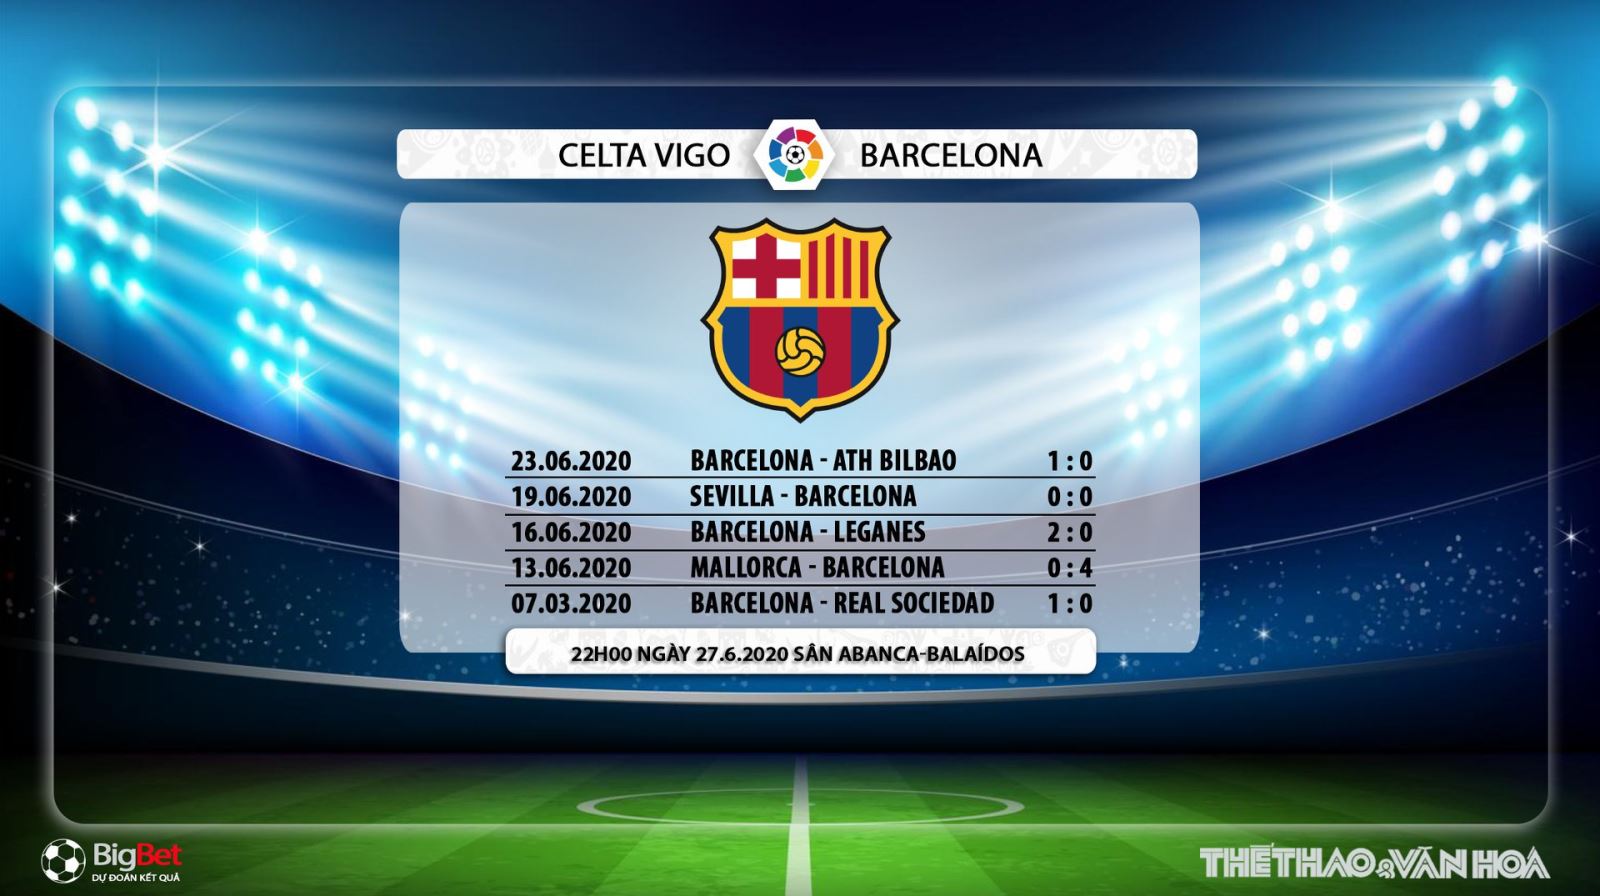 Celta Vigo vs Barcelona, Barcelona, Celta Vigo, trực tiếp bóng đá, bóng đá, lịch thi đấu, nhận định bóng đá, kèo bóng đá